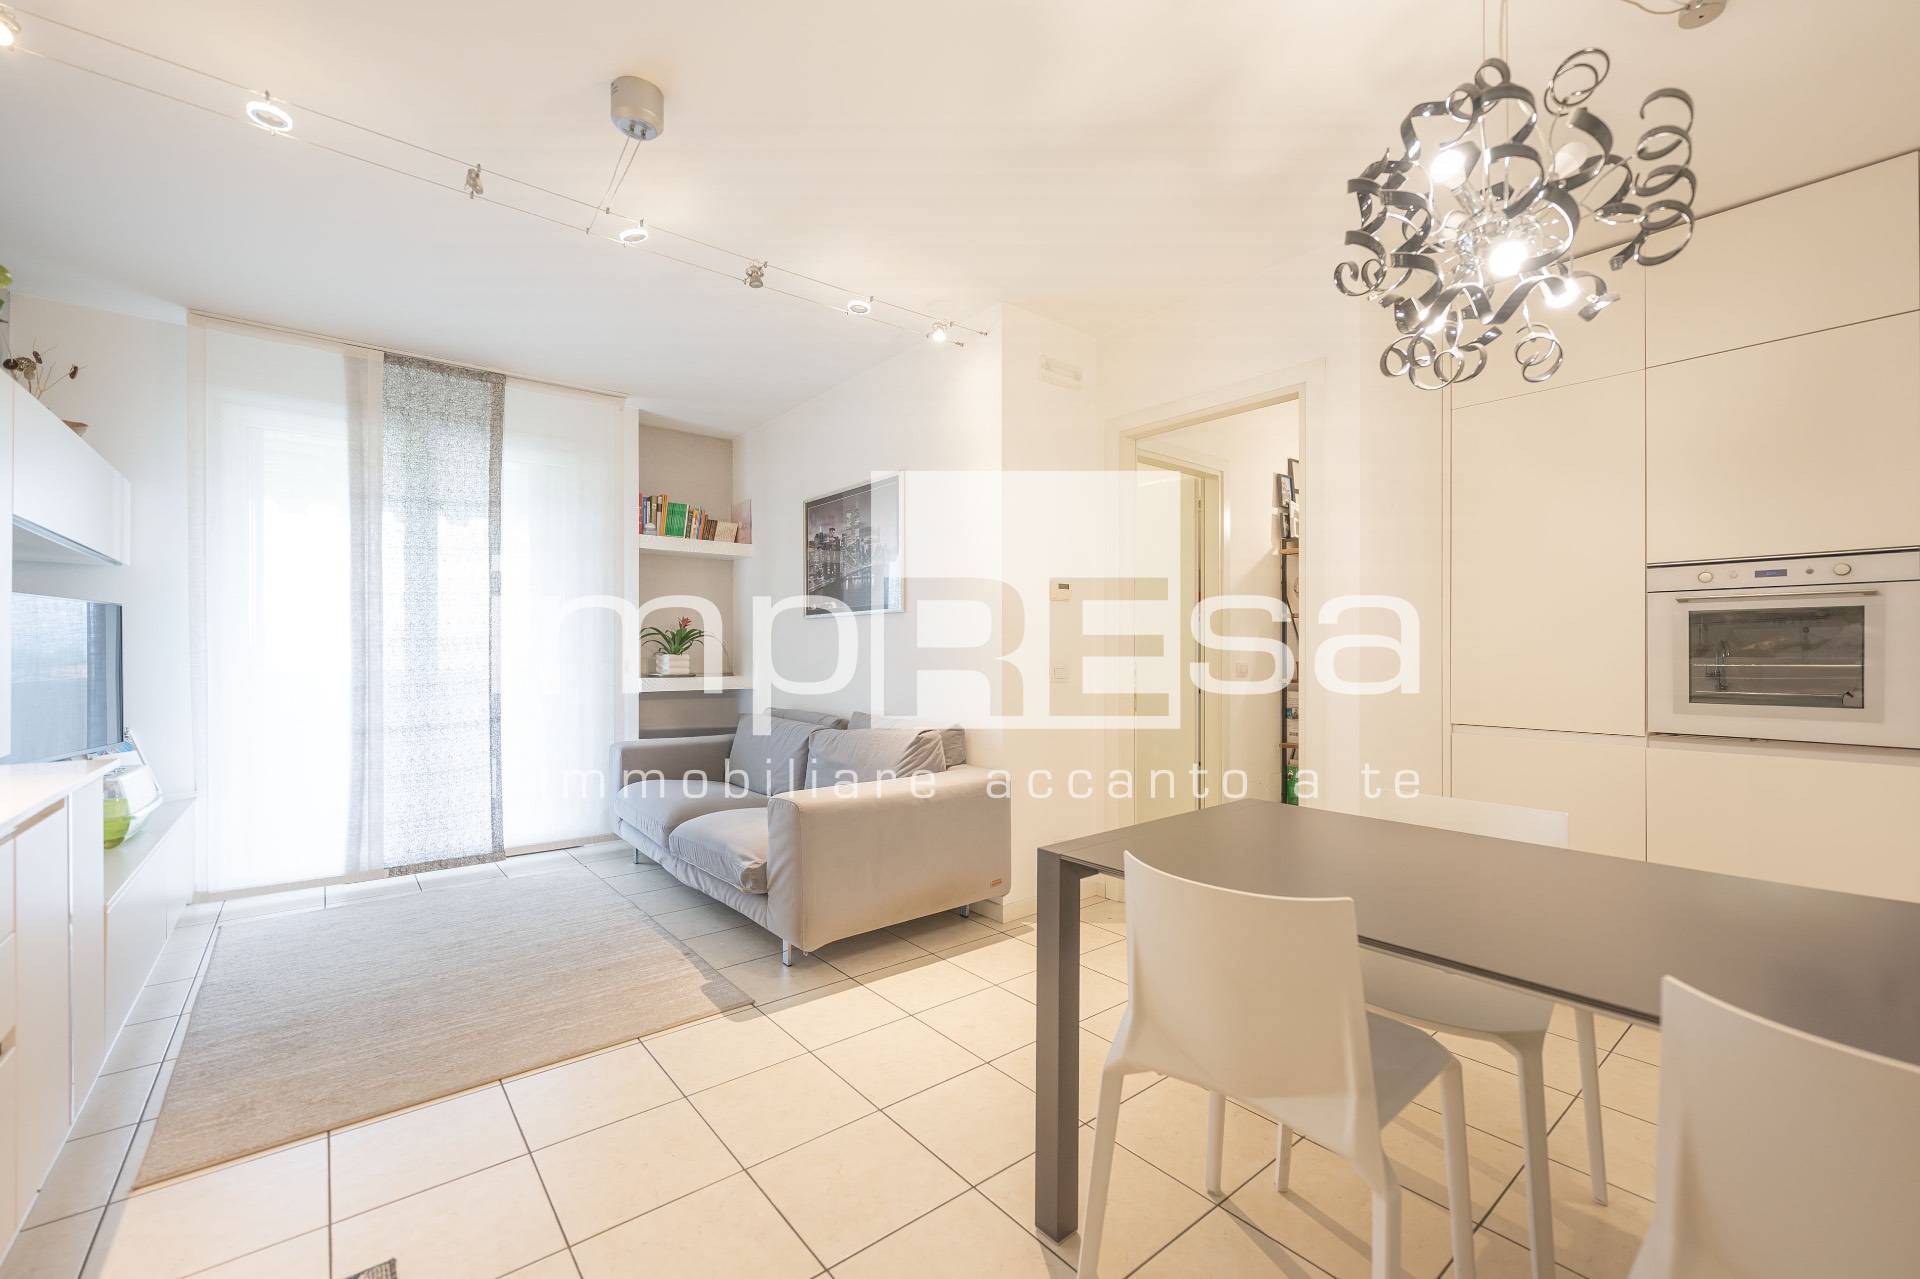 Appartamento in vendita a Prata di Pordenone, 3 locali, zona anova, prezzo € 158.000 | PortaleAgenzieImmobiliari.it